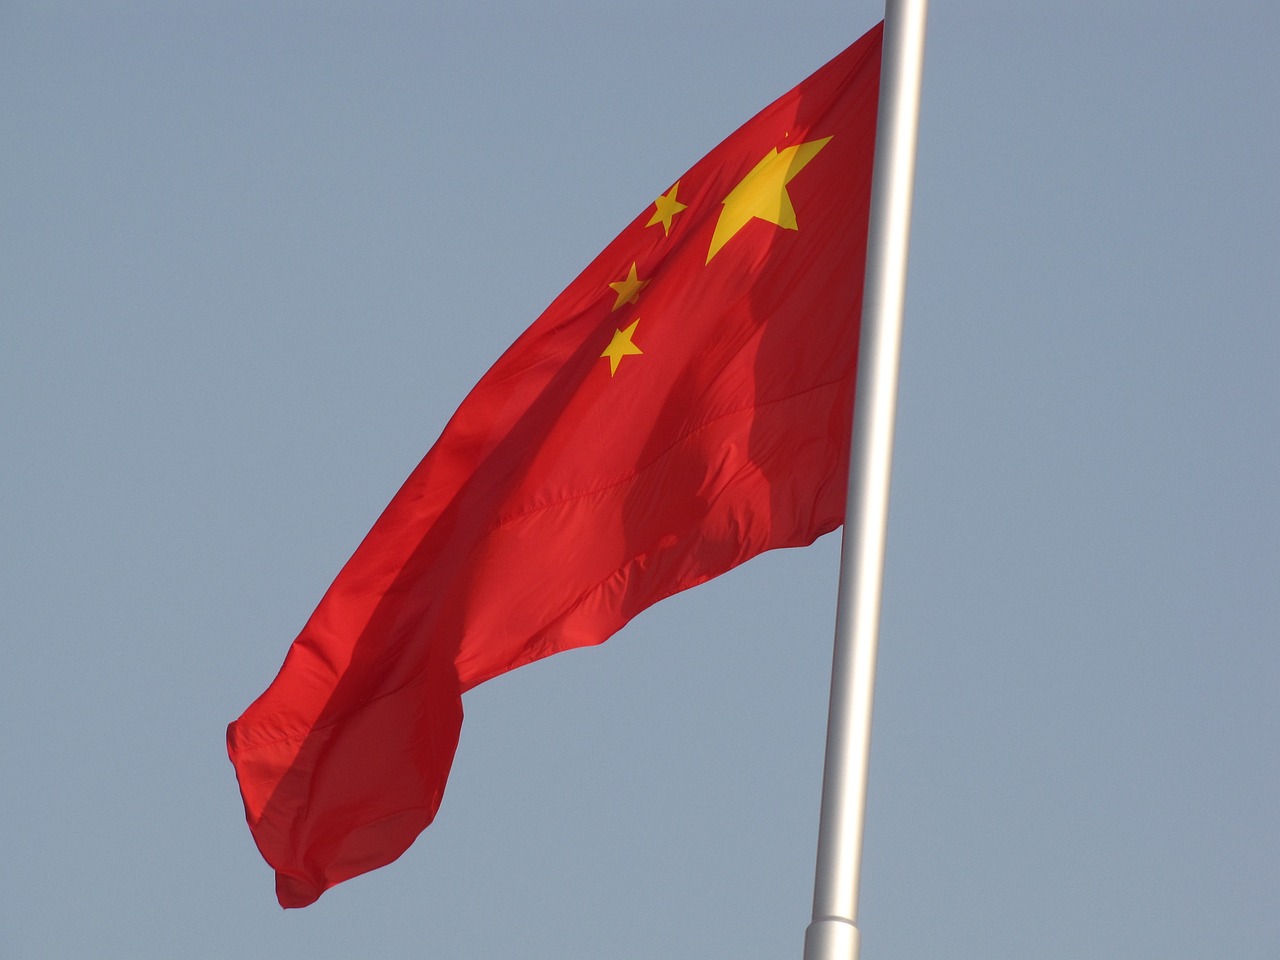 Productos de IA en China deberán pasar una “evaluación de seguridad”